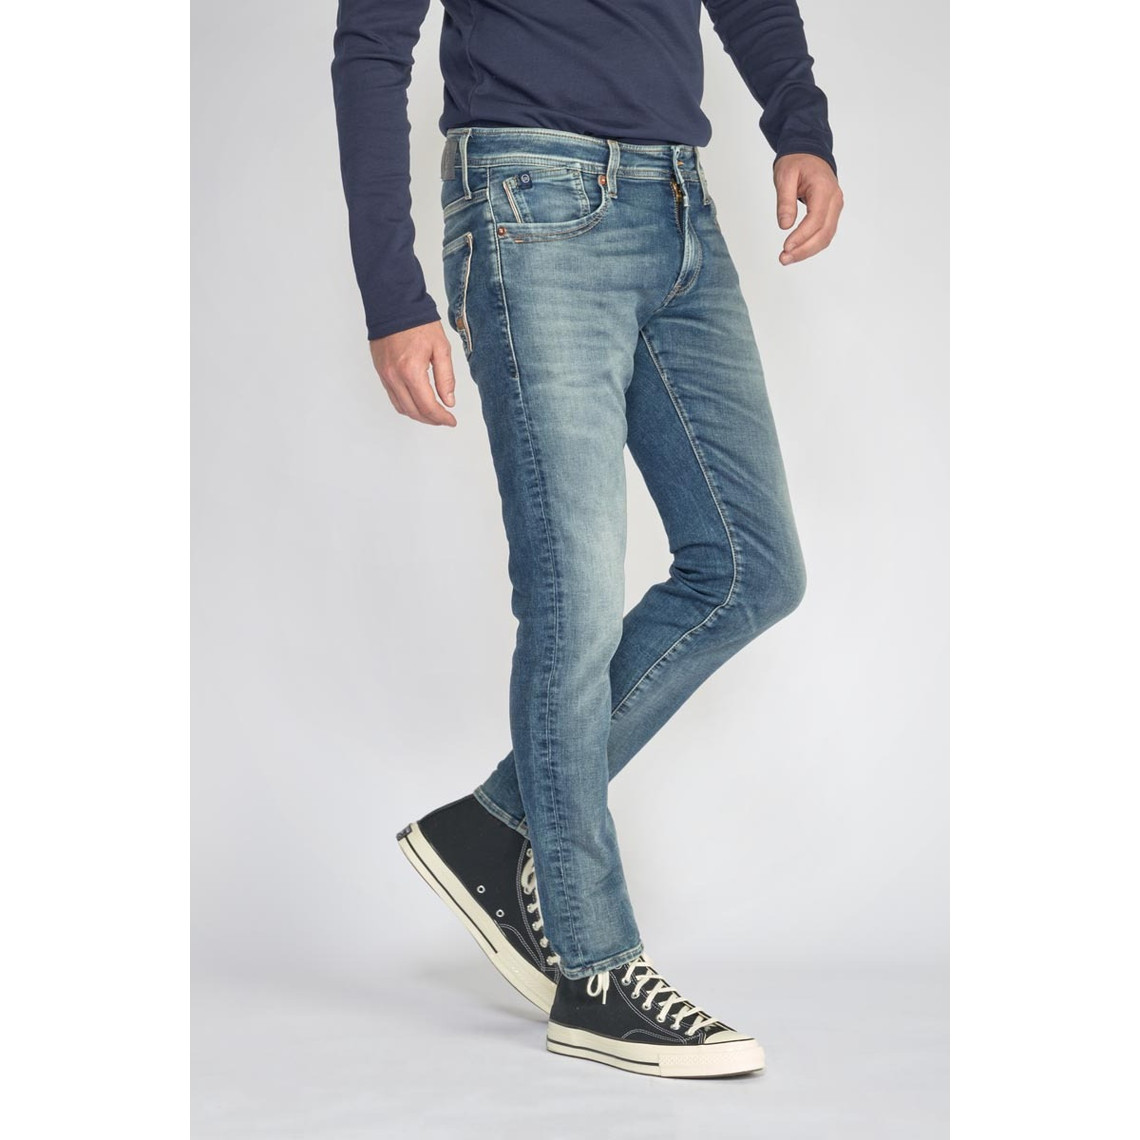 Jeans ajusté BLUE JOGG 700/11, longueur 34 bleu en coton Neal